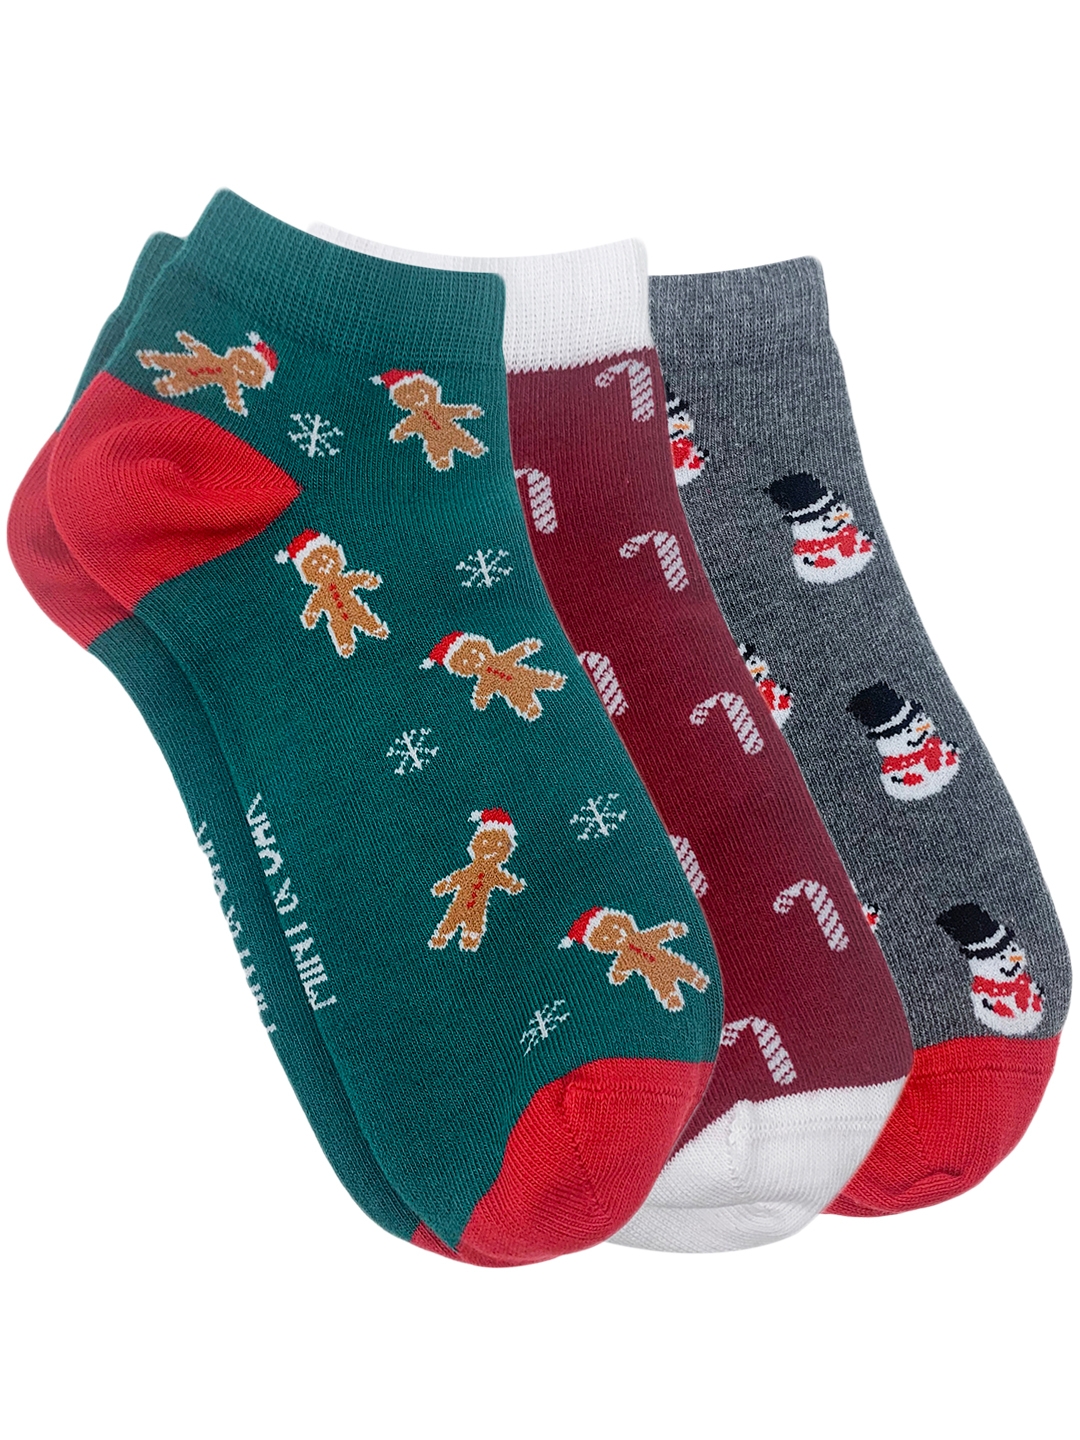 Mint & Oak | Mint & Oak Ankle Combo 3 - Christmas Greetings Ankle Length Pack of 3 Socks for Men